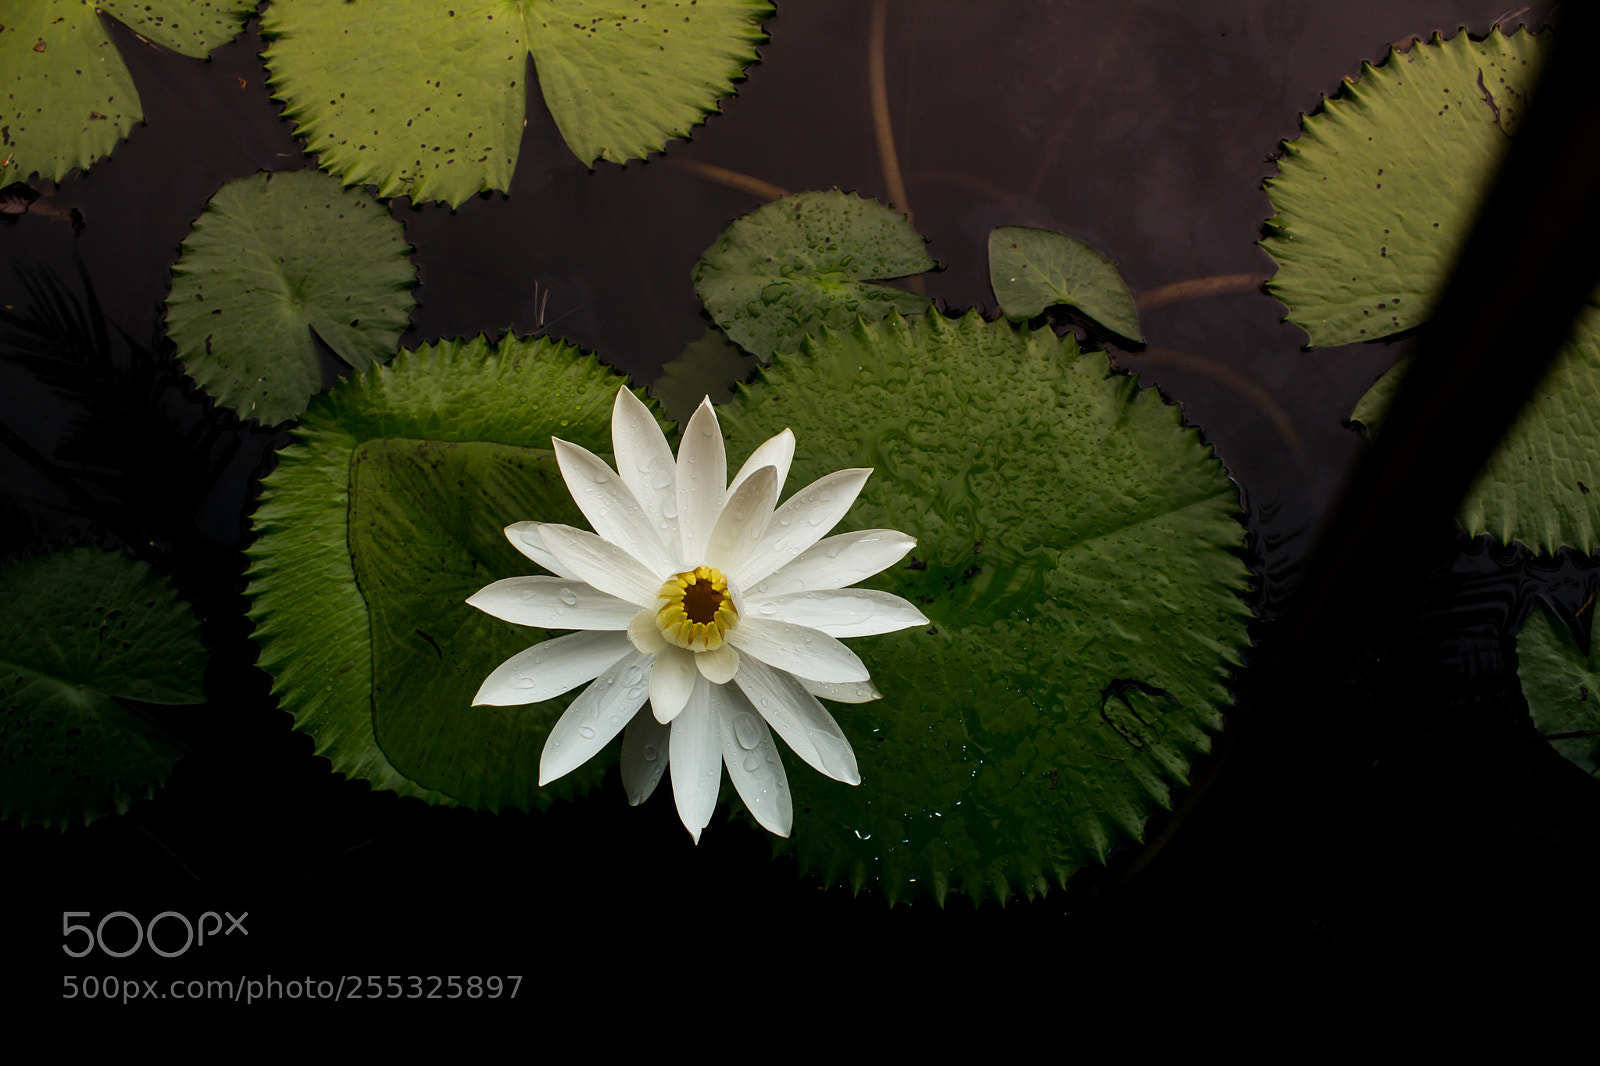 Canon EOS 650D (EOS Rebel T4i / EOS Kiss X6i) sample photo. White lotus white background photography